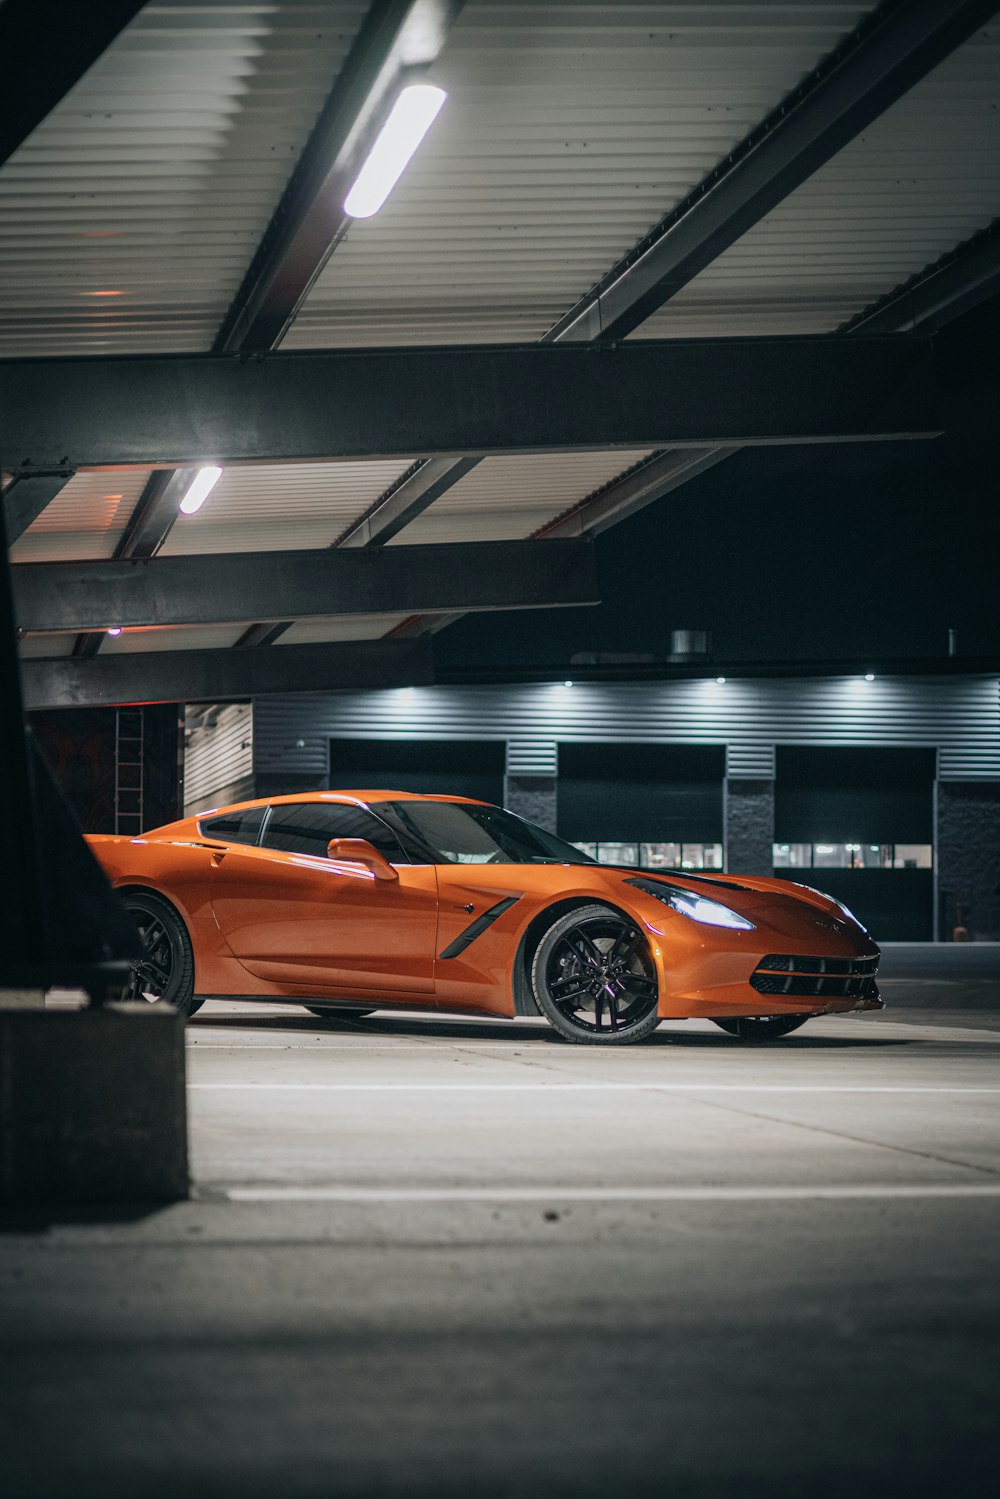 an orange sports car parked in a parking garage